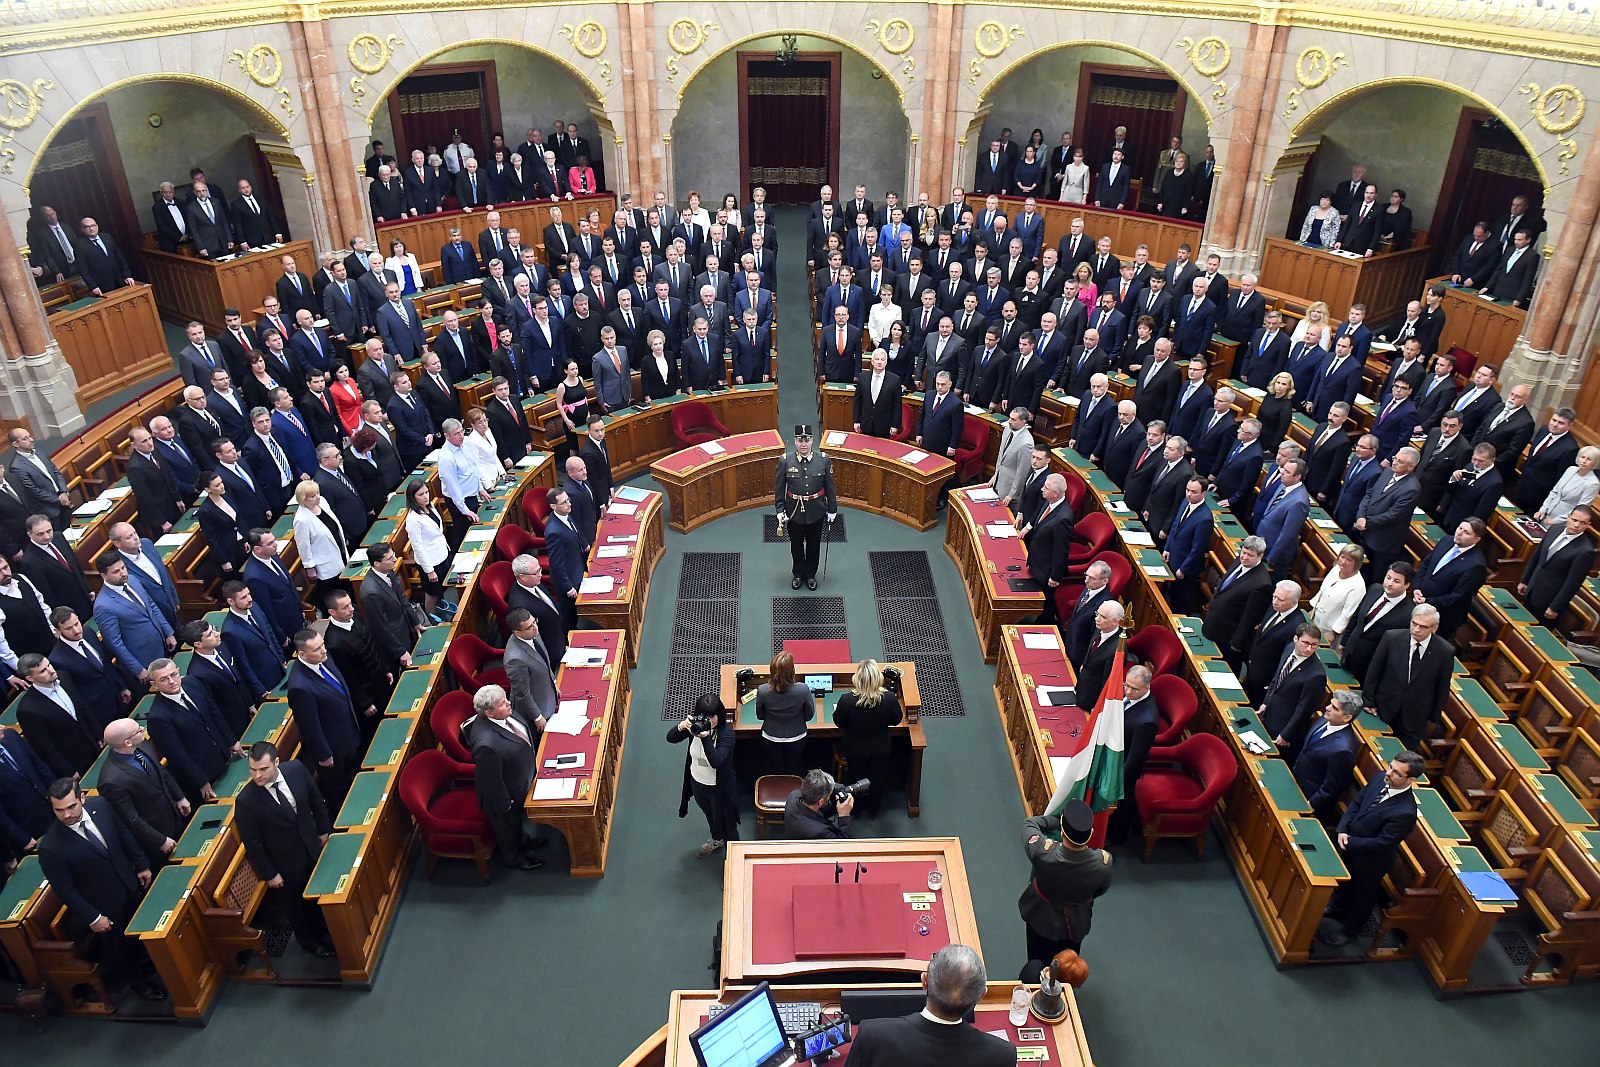 Letették esküjüket az országgyűlési képviselők - megalakult az új parlament